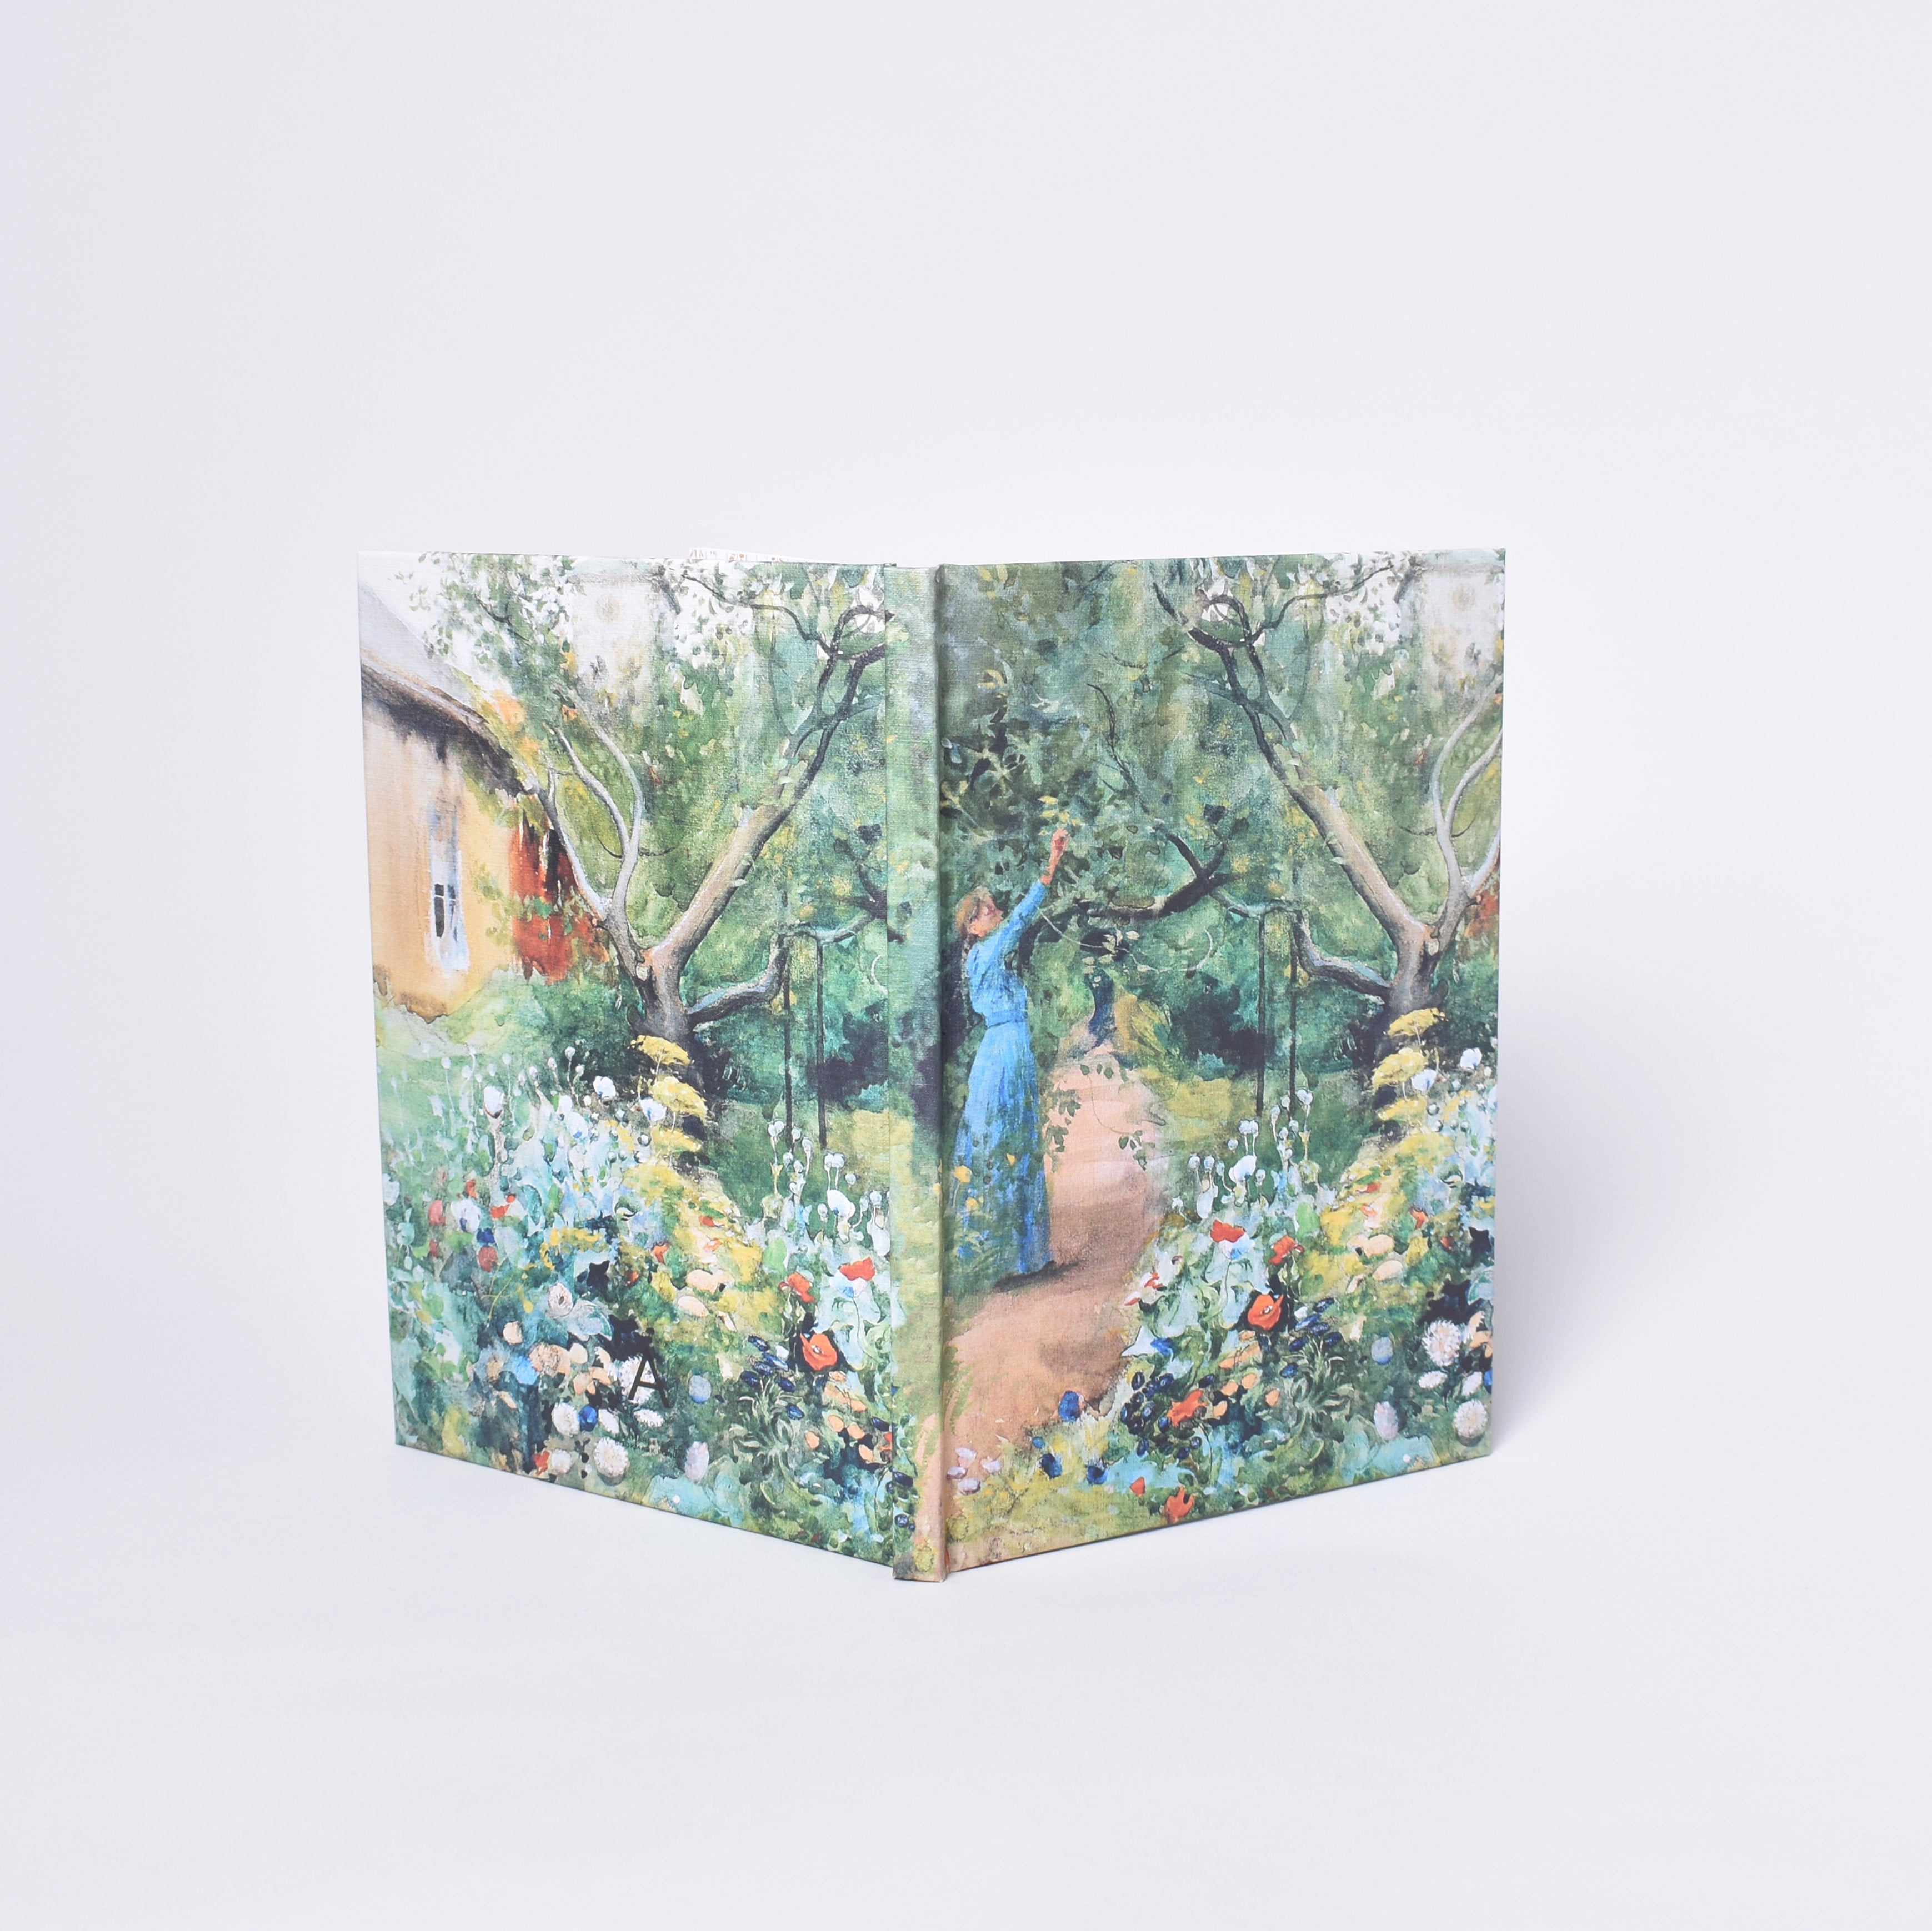 Inbunden anteckningsbok med Carl Larssons målning Trädgårdsscen från Marstrand